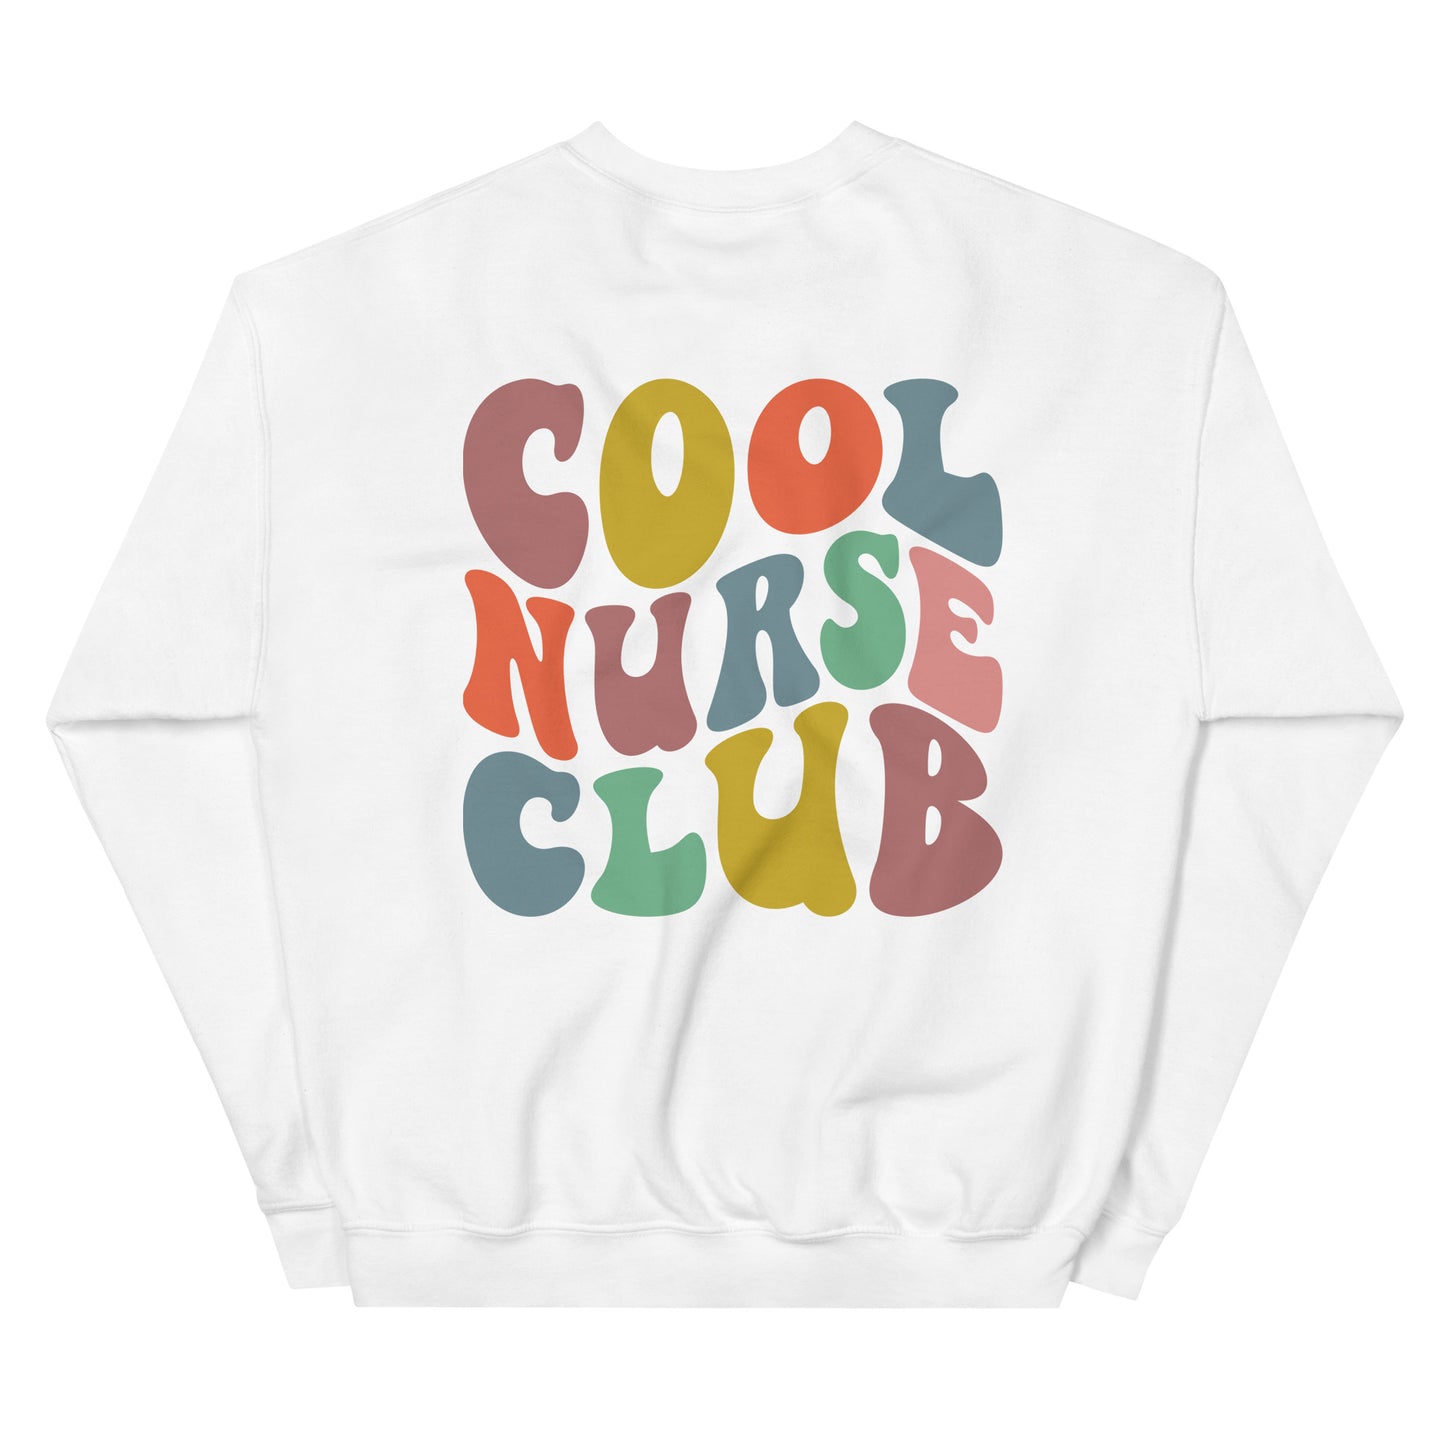 Cool nurse club